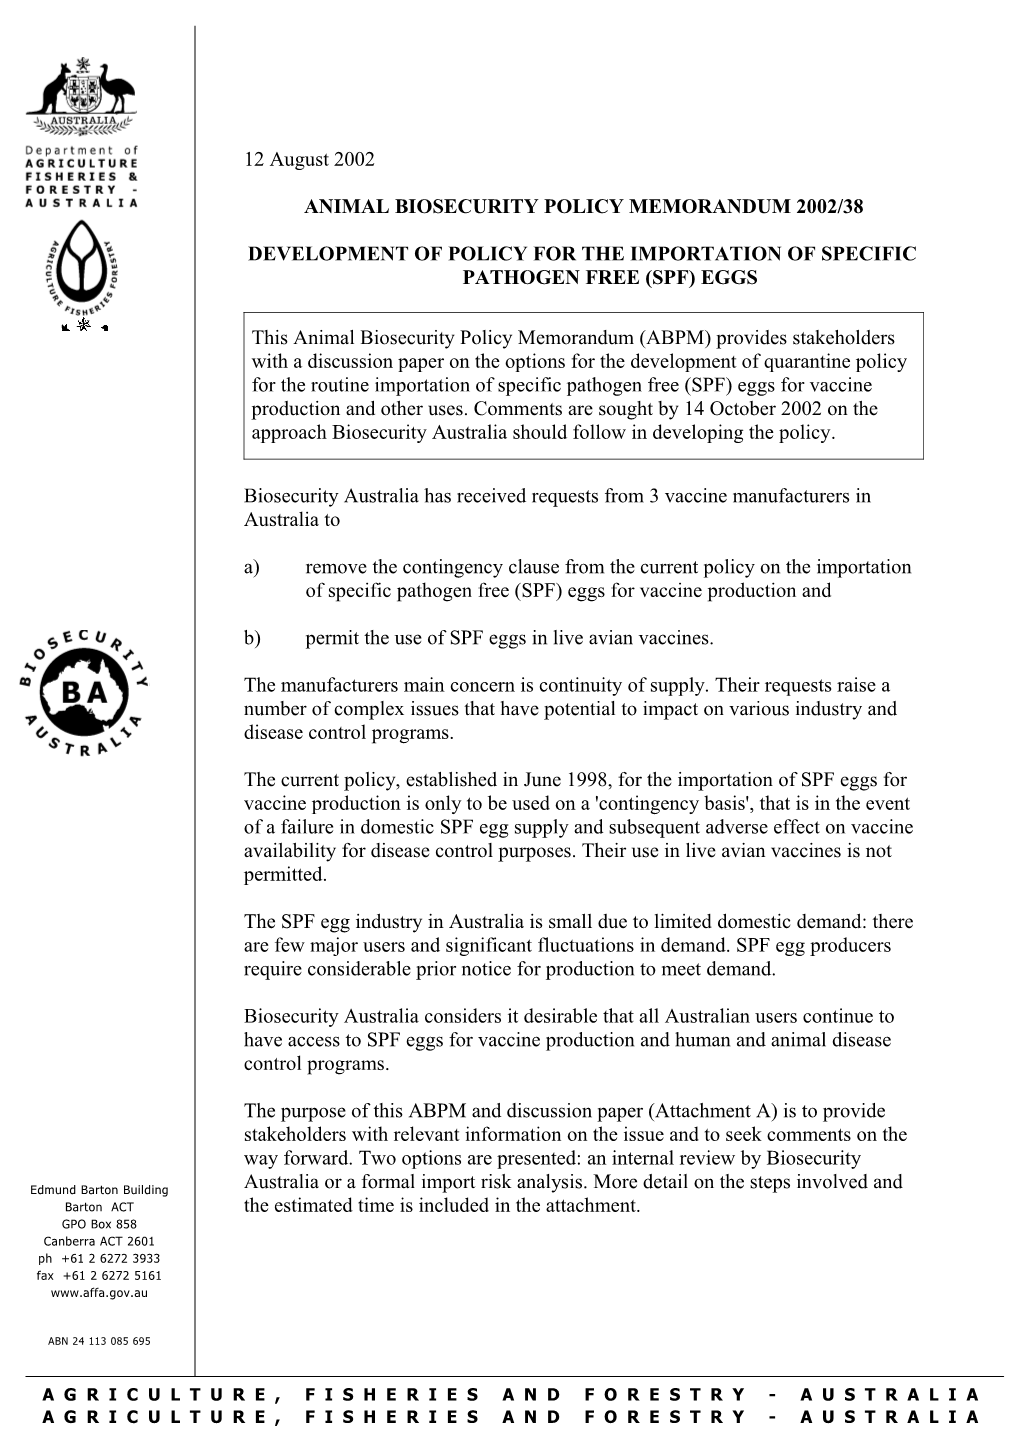 Animal Biosecurity Policy Memorandum 2002/38